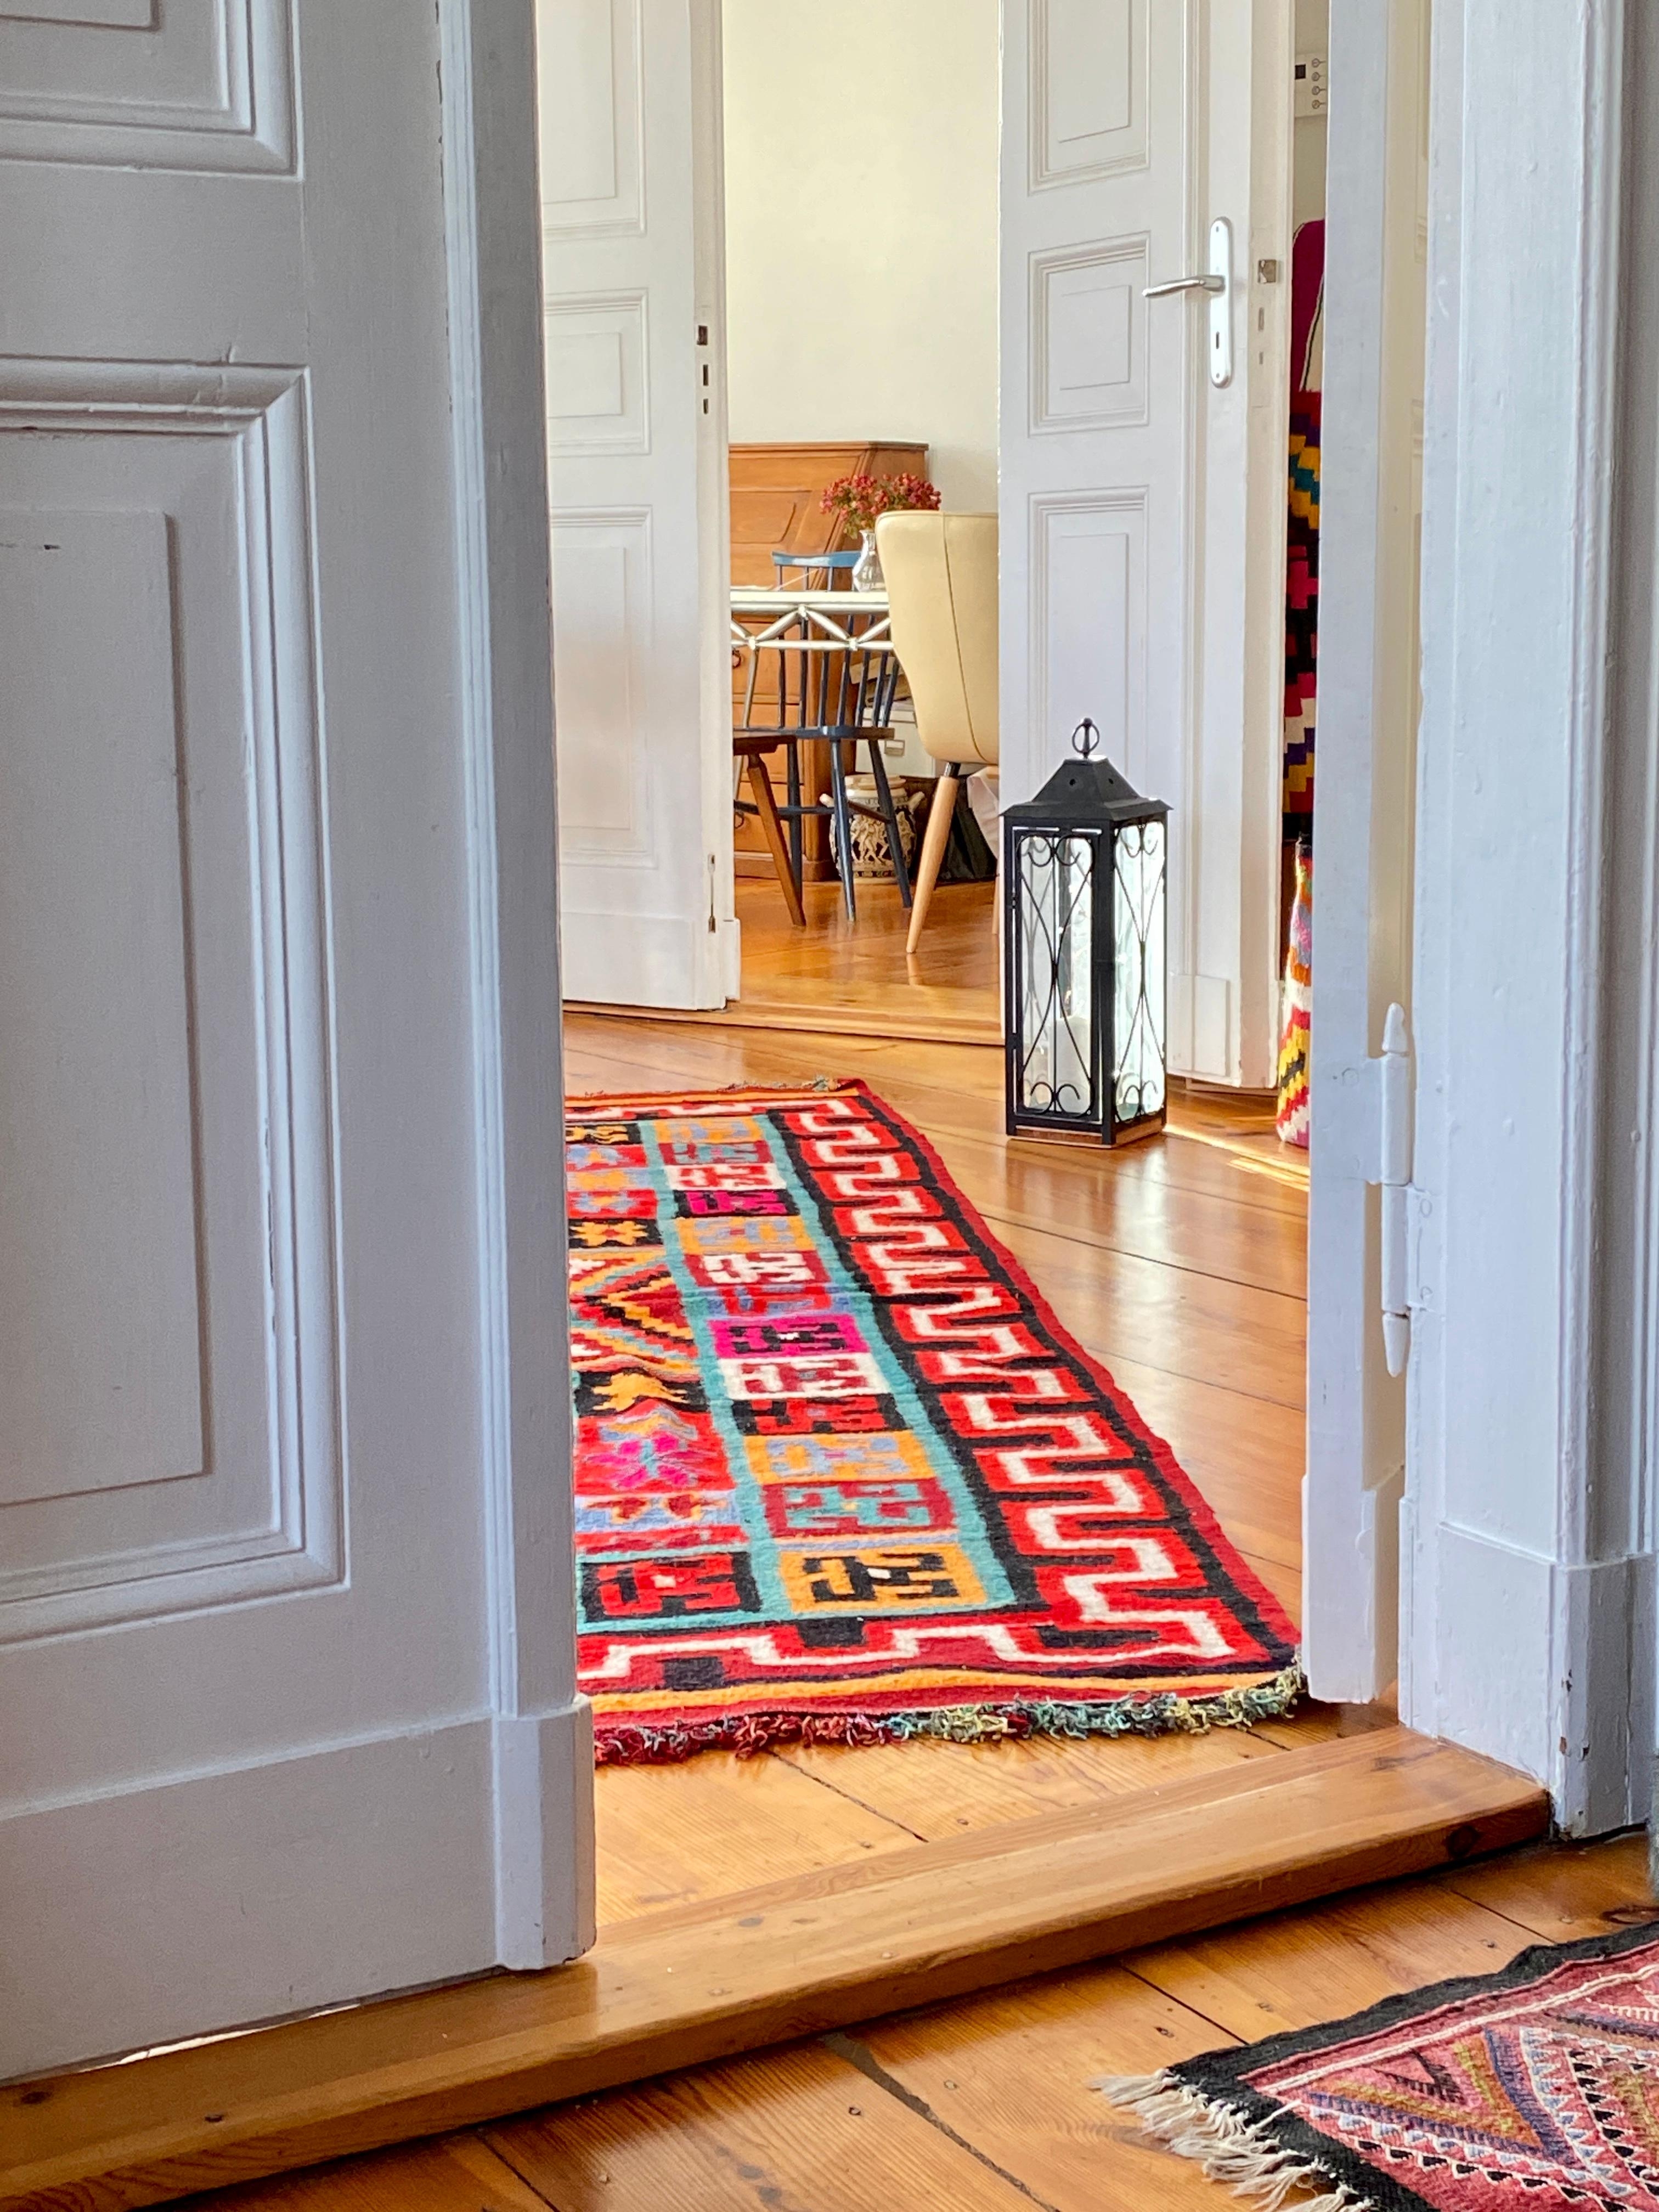 #wohnzimmer #flügeltür #teppich #vintage #kelim #interior #interiordesign #interiorinspo